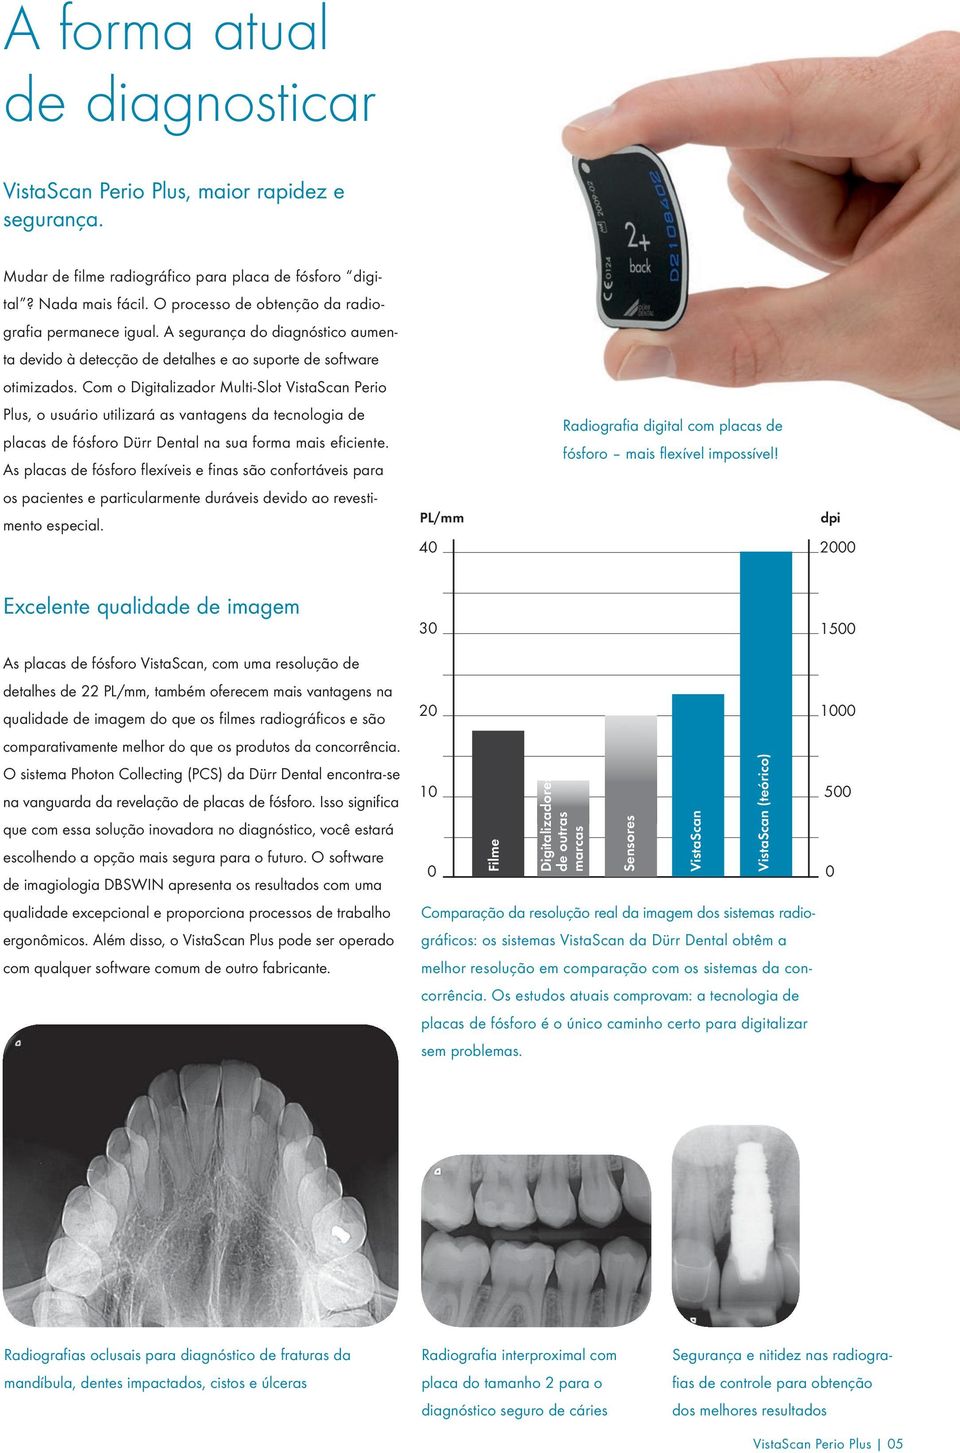 Com o Digitalizador Multi-Slot VistaScan Perio Plus, o usuário utilizará as vantagens da tecnologia de placas de fósforo Dürr Dental na sua forma mais eficiente.